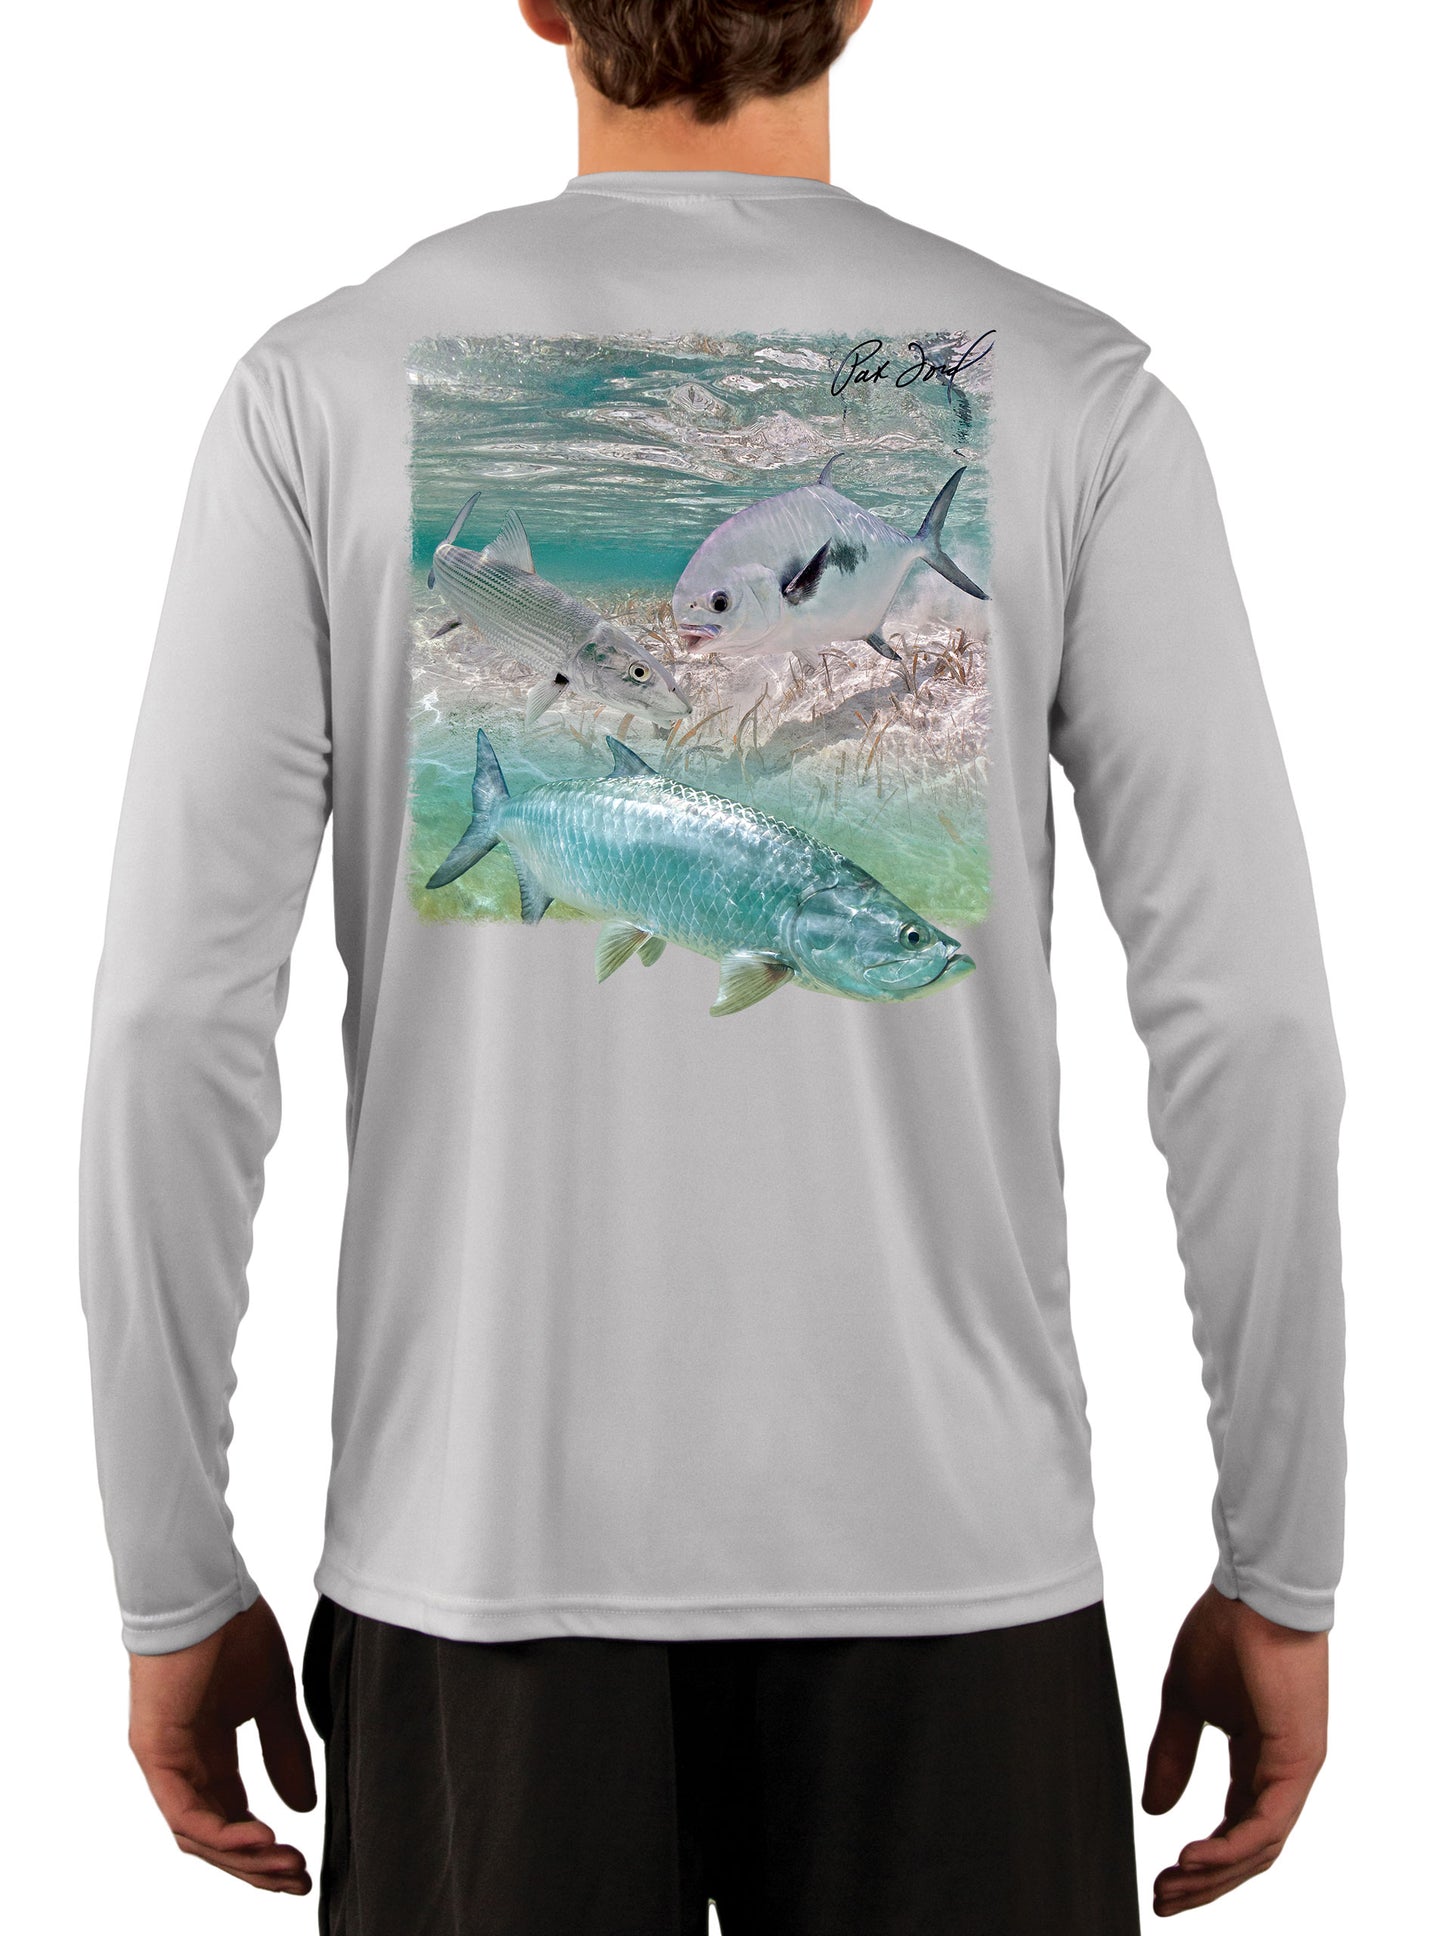 Pat Ford Key West Slam Tarpon Bonefish & Permit Fishing Shirt - Skiff Life